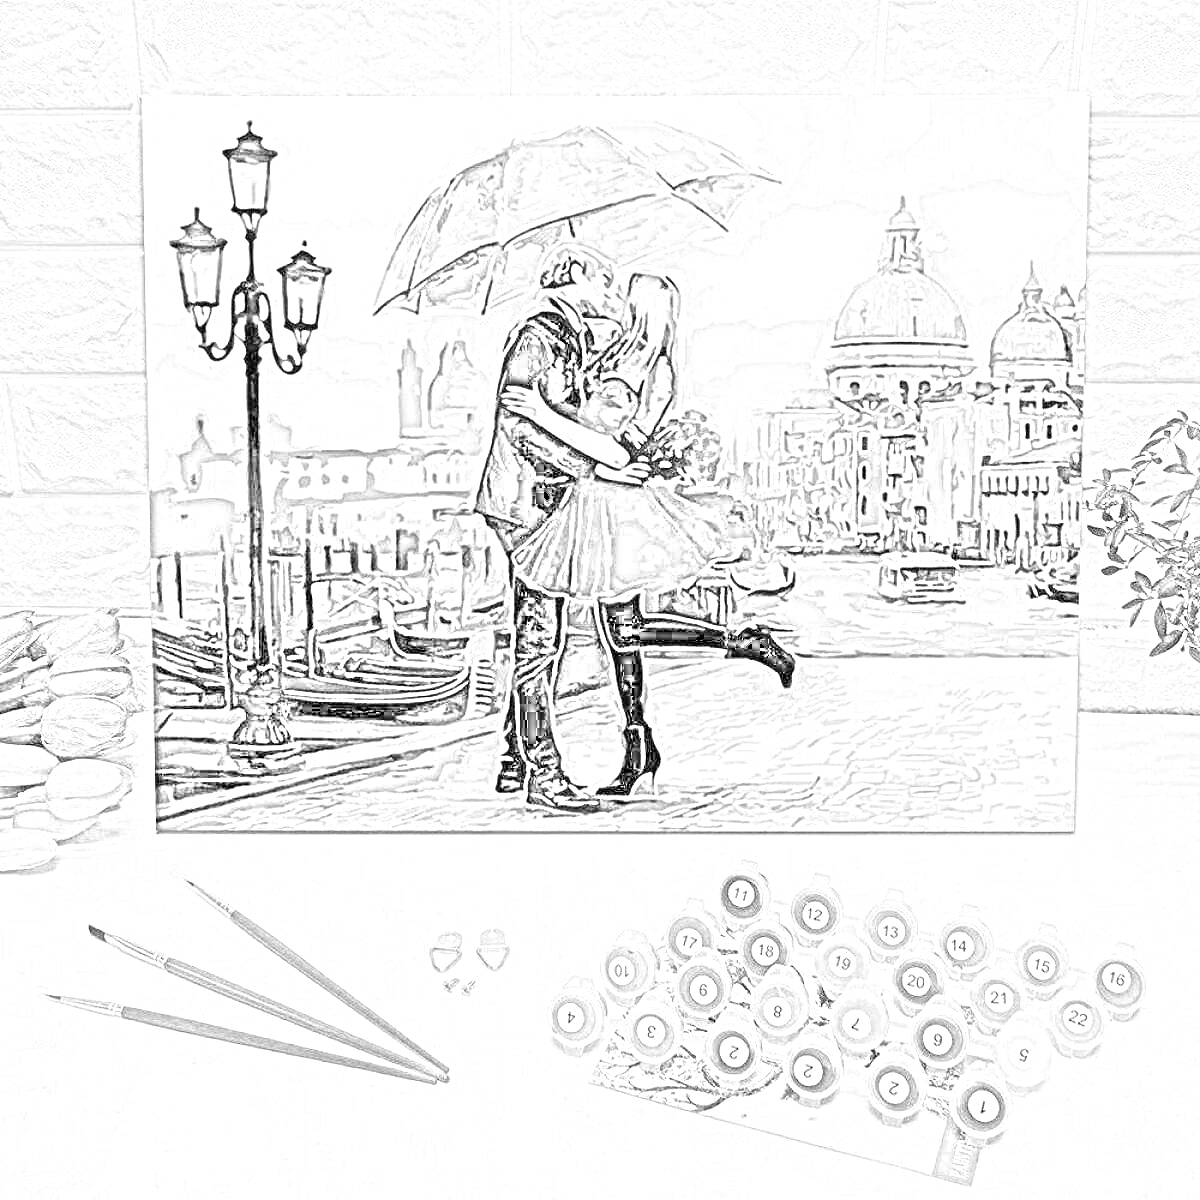 Влюбленная пара под зонтом на фоне архитектурных сооружений и города с каналом и лодками